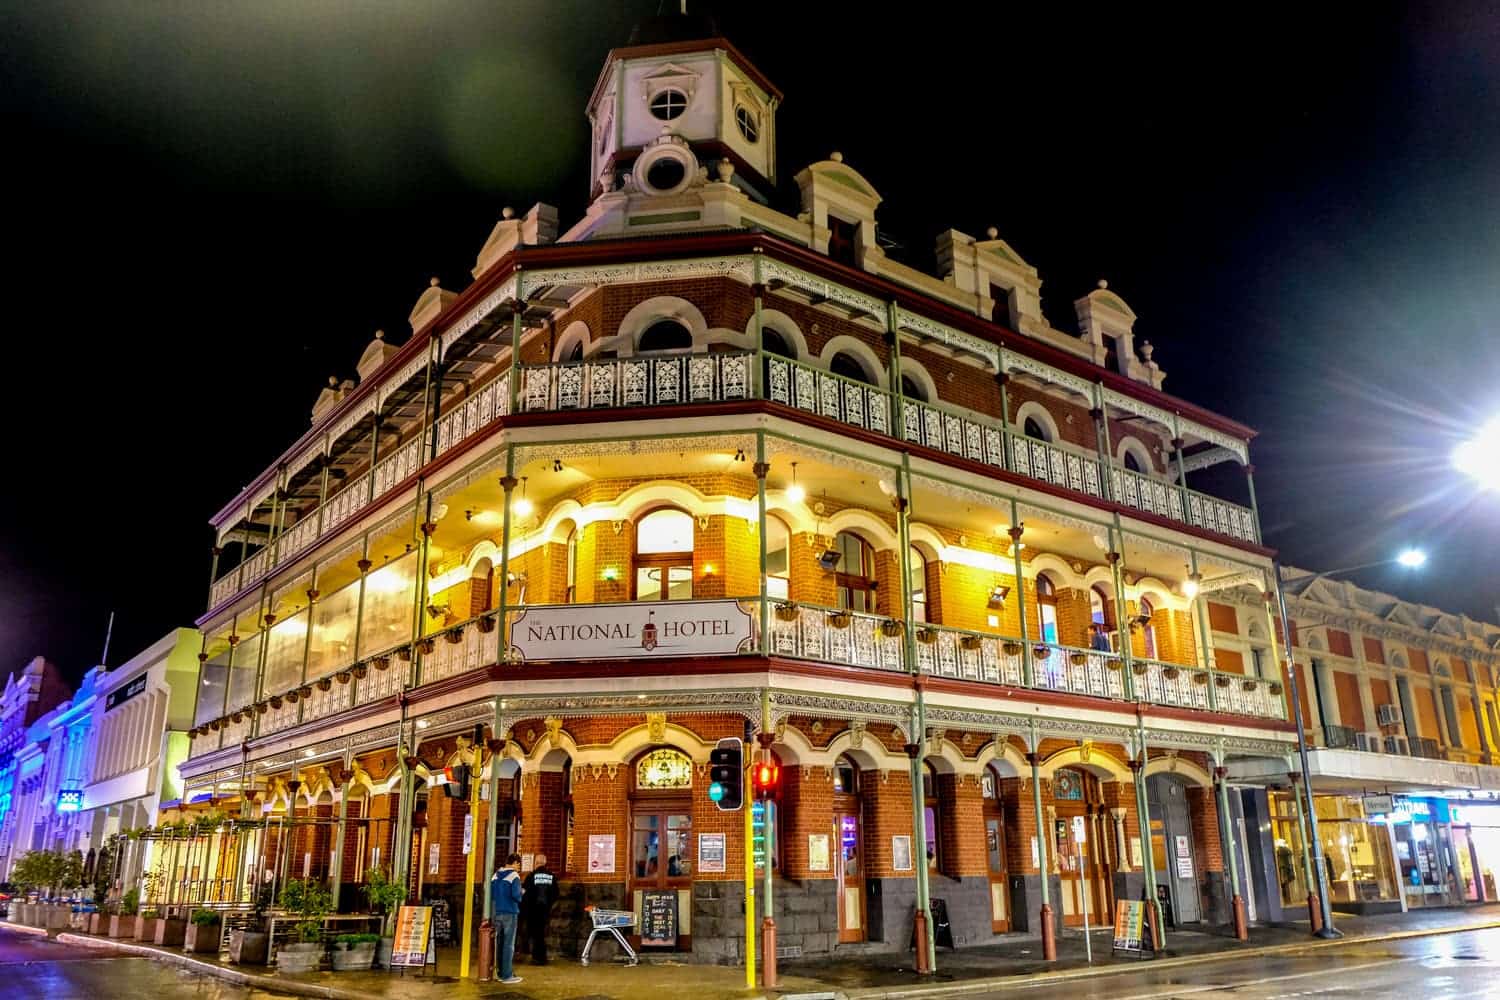 Los arcos de las ventanas de ladrillo rojo y los adornos blancos del hotel National en Perth por la noche, el hotel más antiguo de la ciudad